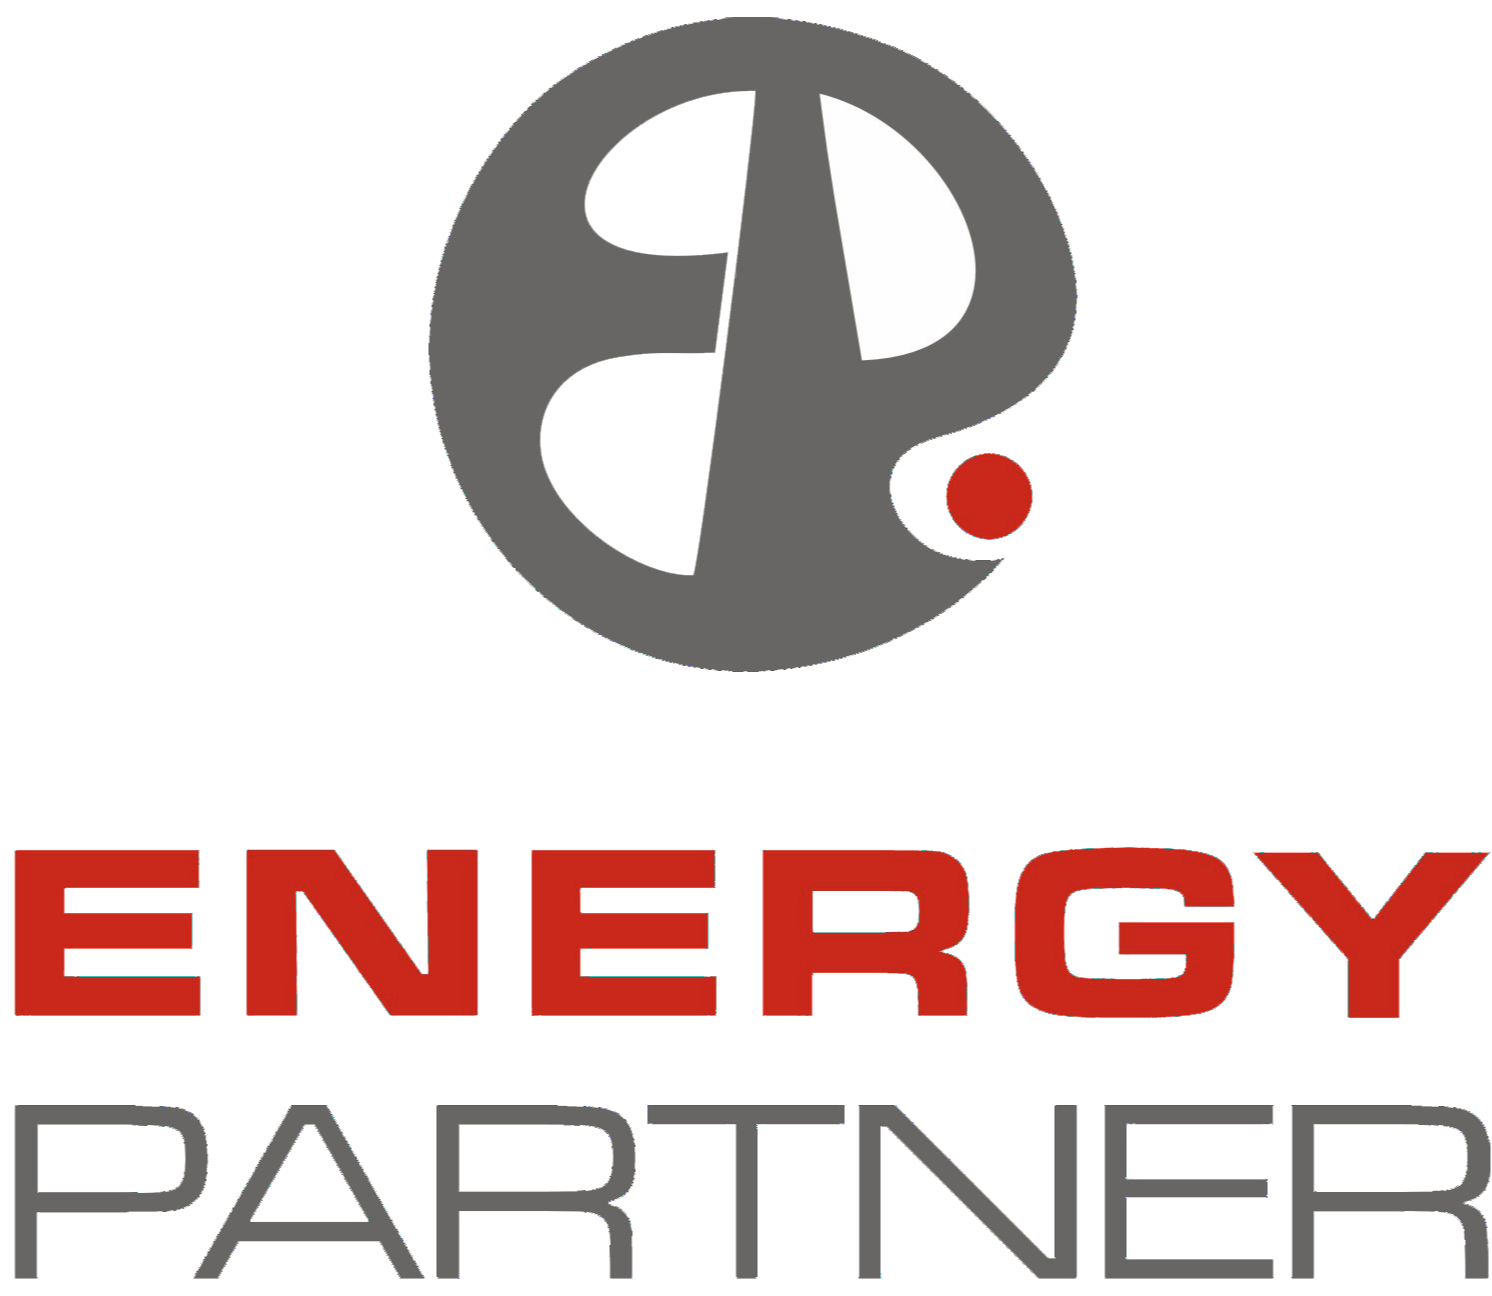 EnergyPartner.cz PDF